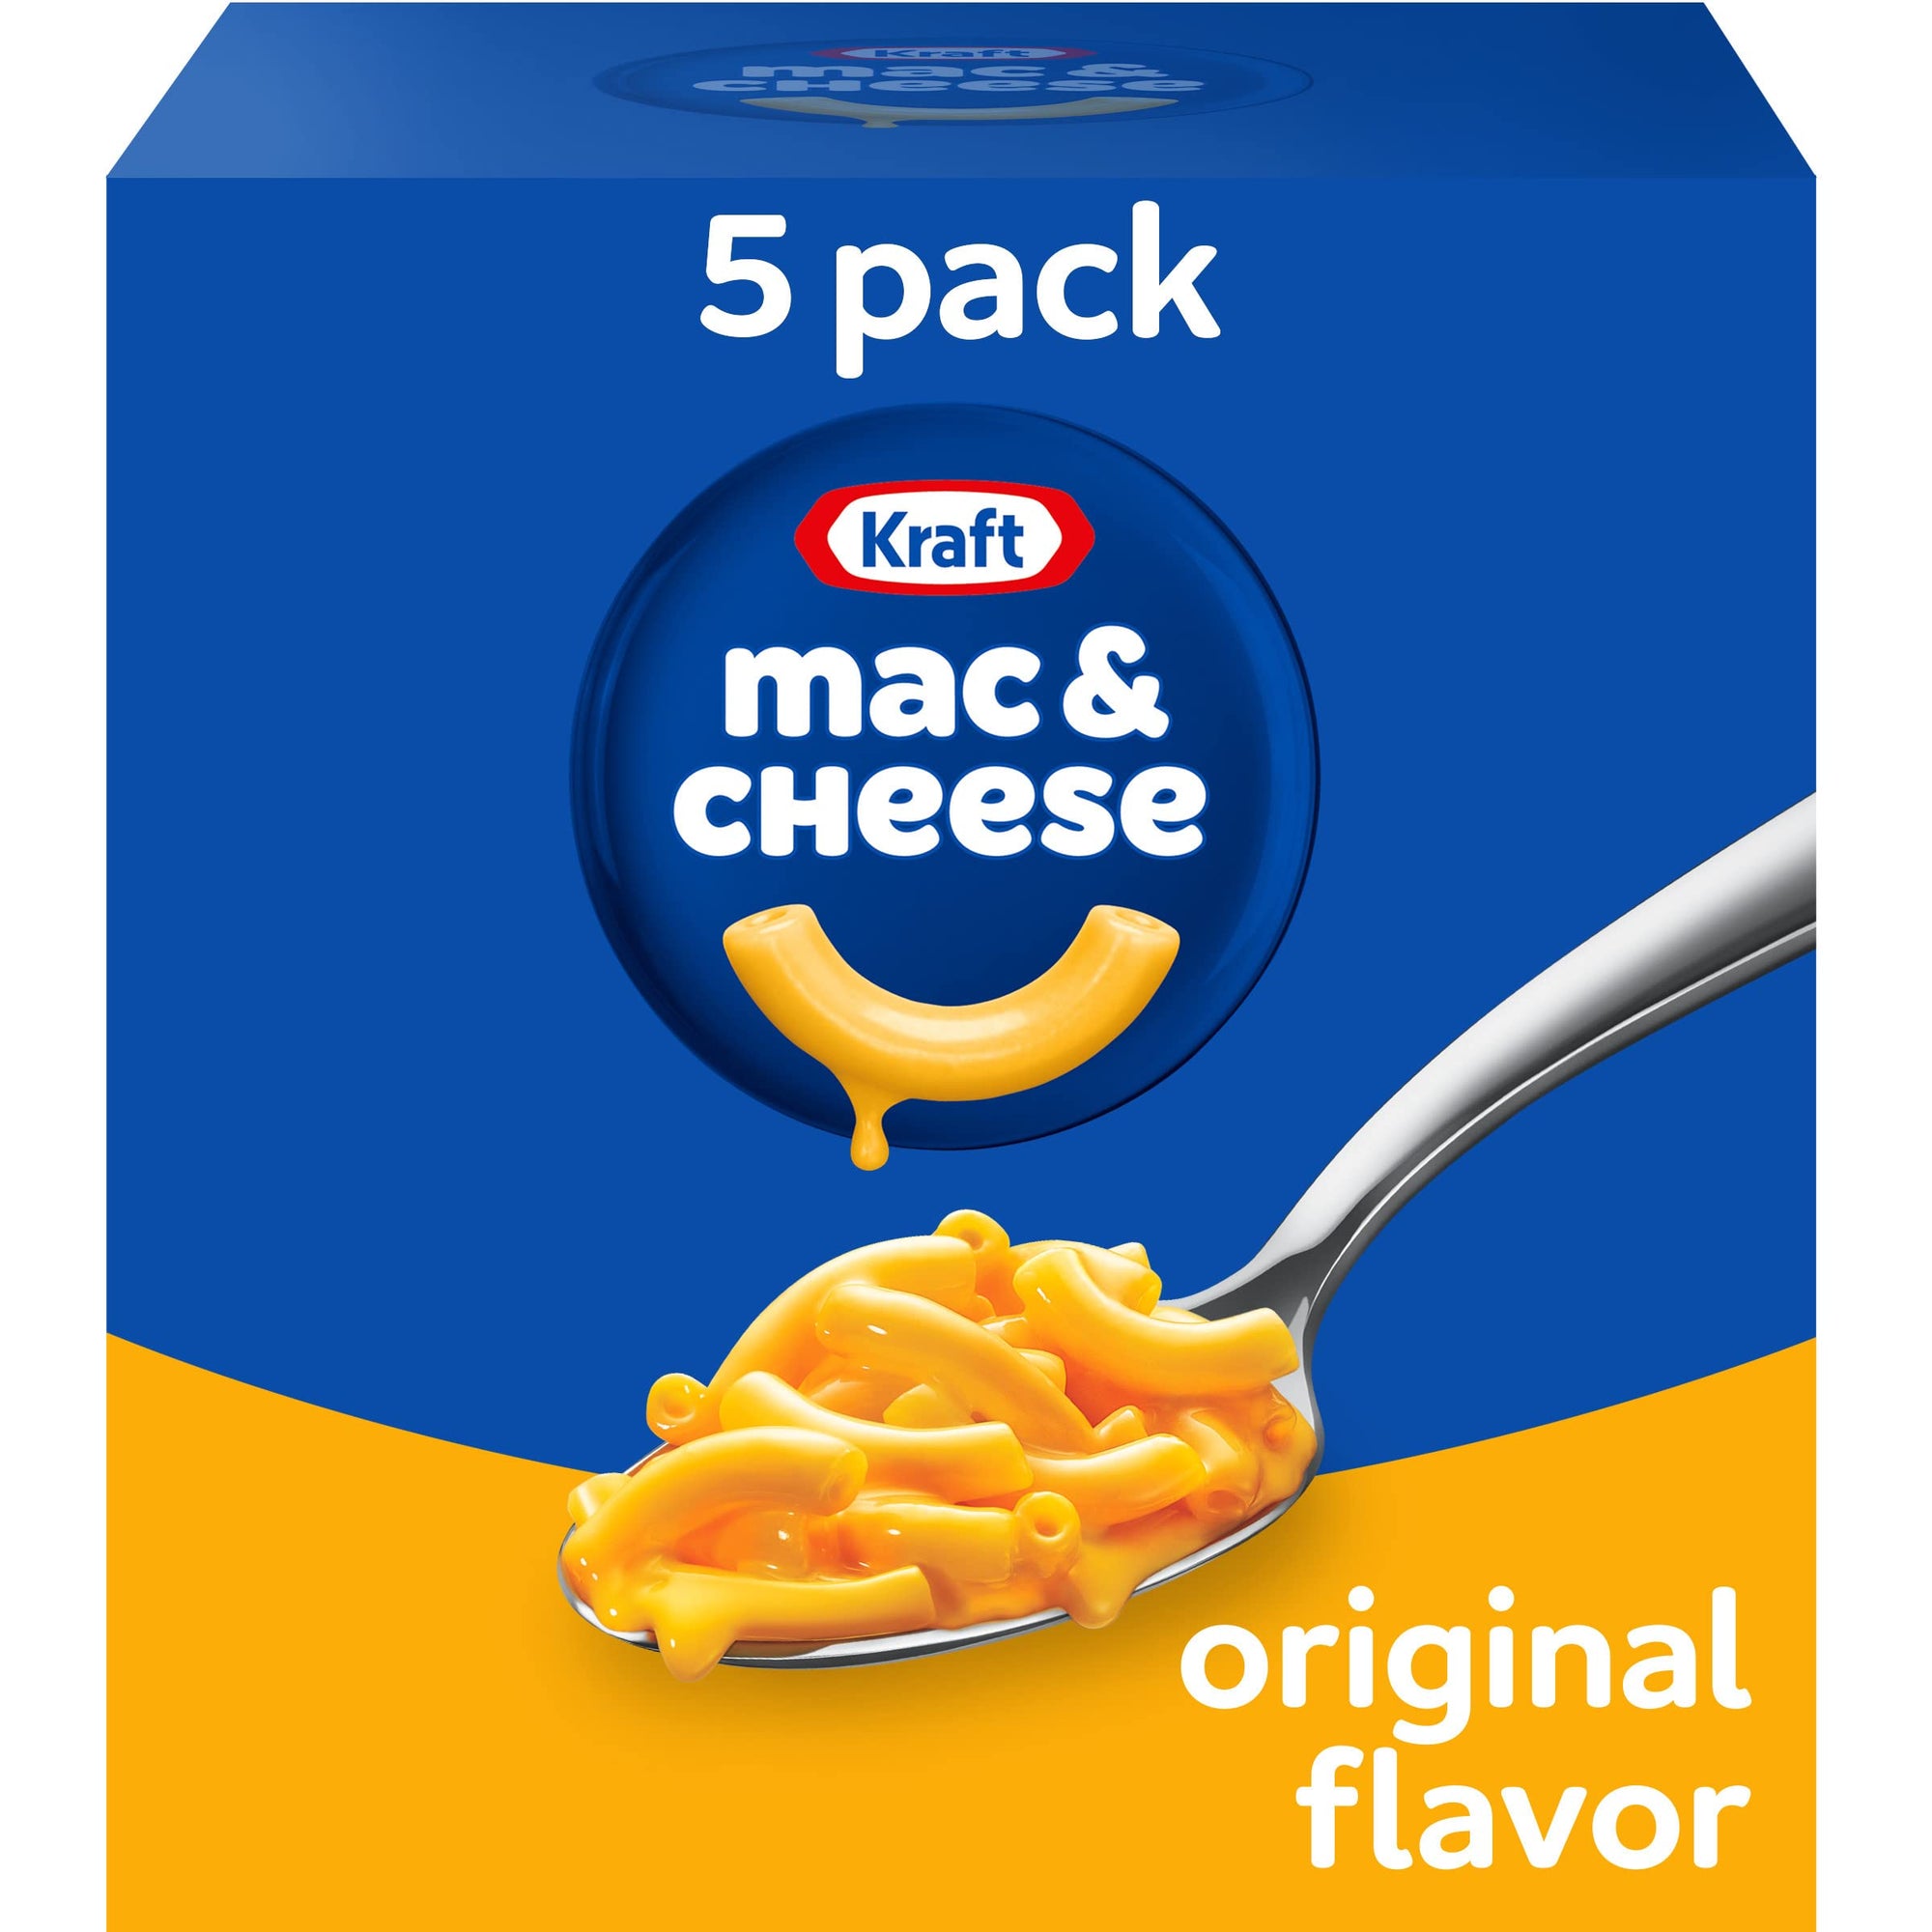 Kraft Macaroni & Cheese Original 5 pack